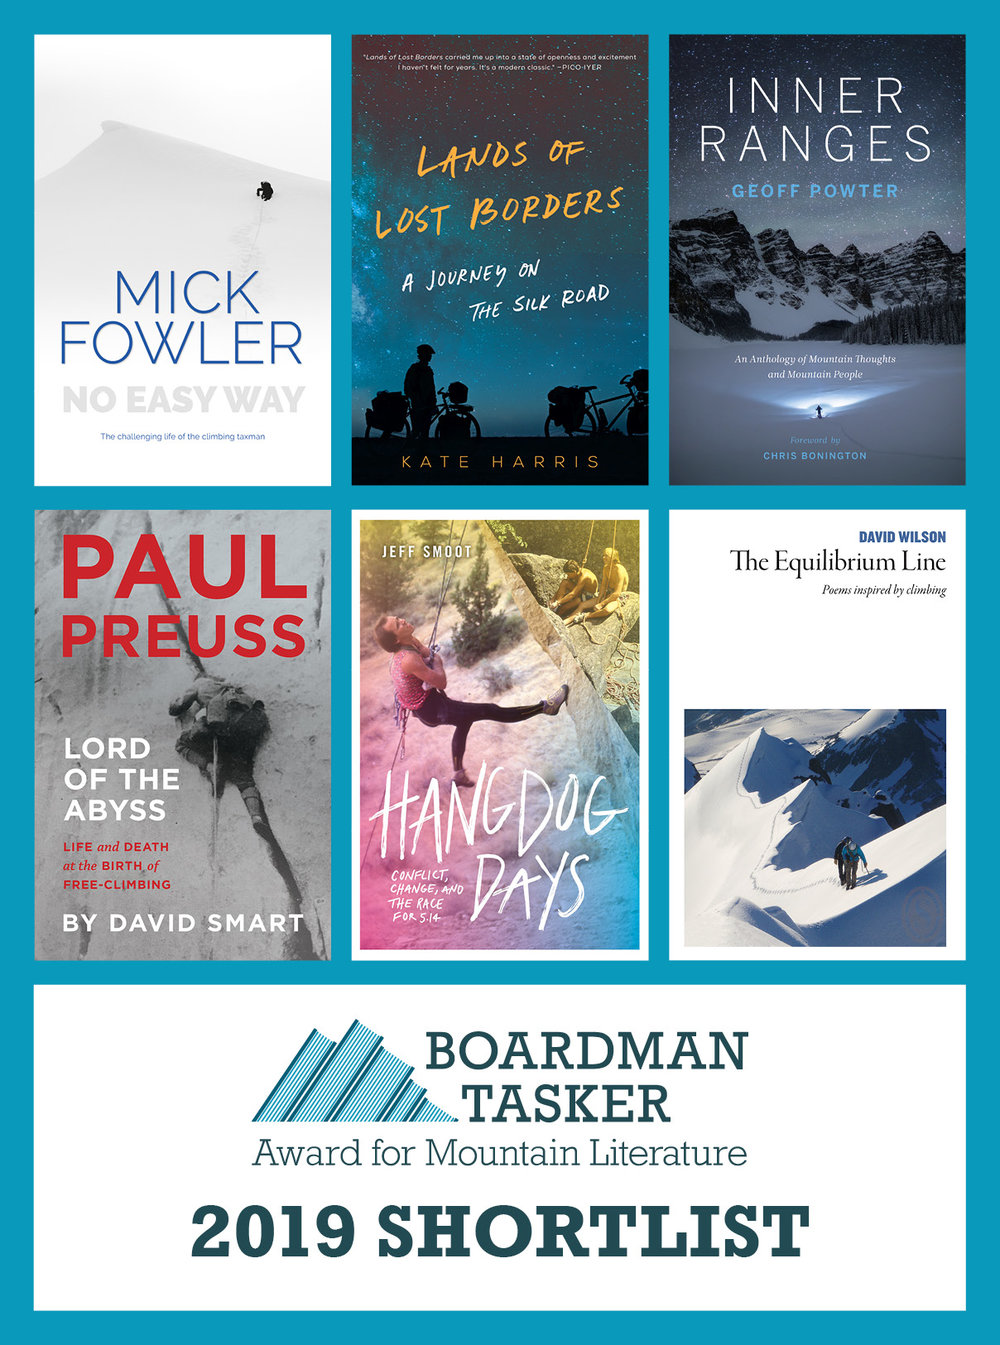 2019 Boardman Tasker Award for Mountain Literature Shortlist Announced — The Boardman Tasker Prize for Mountain